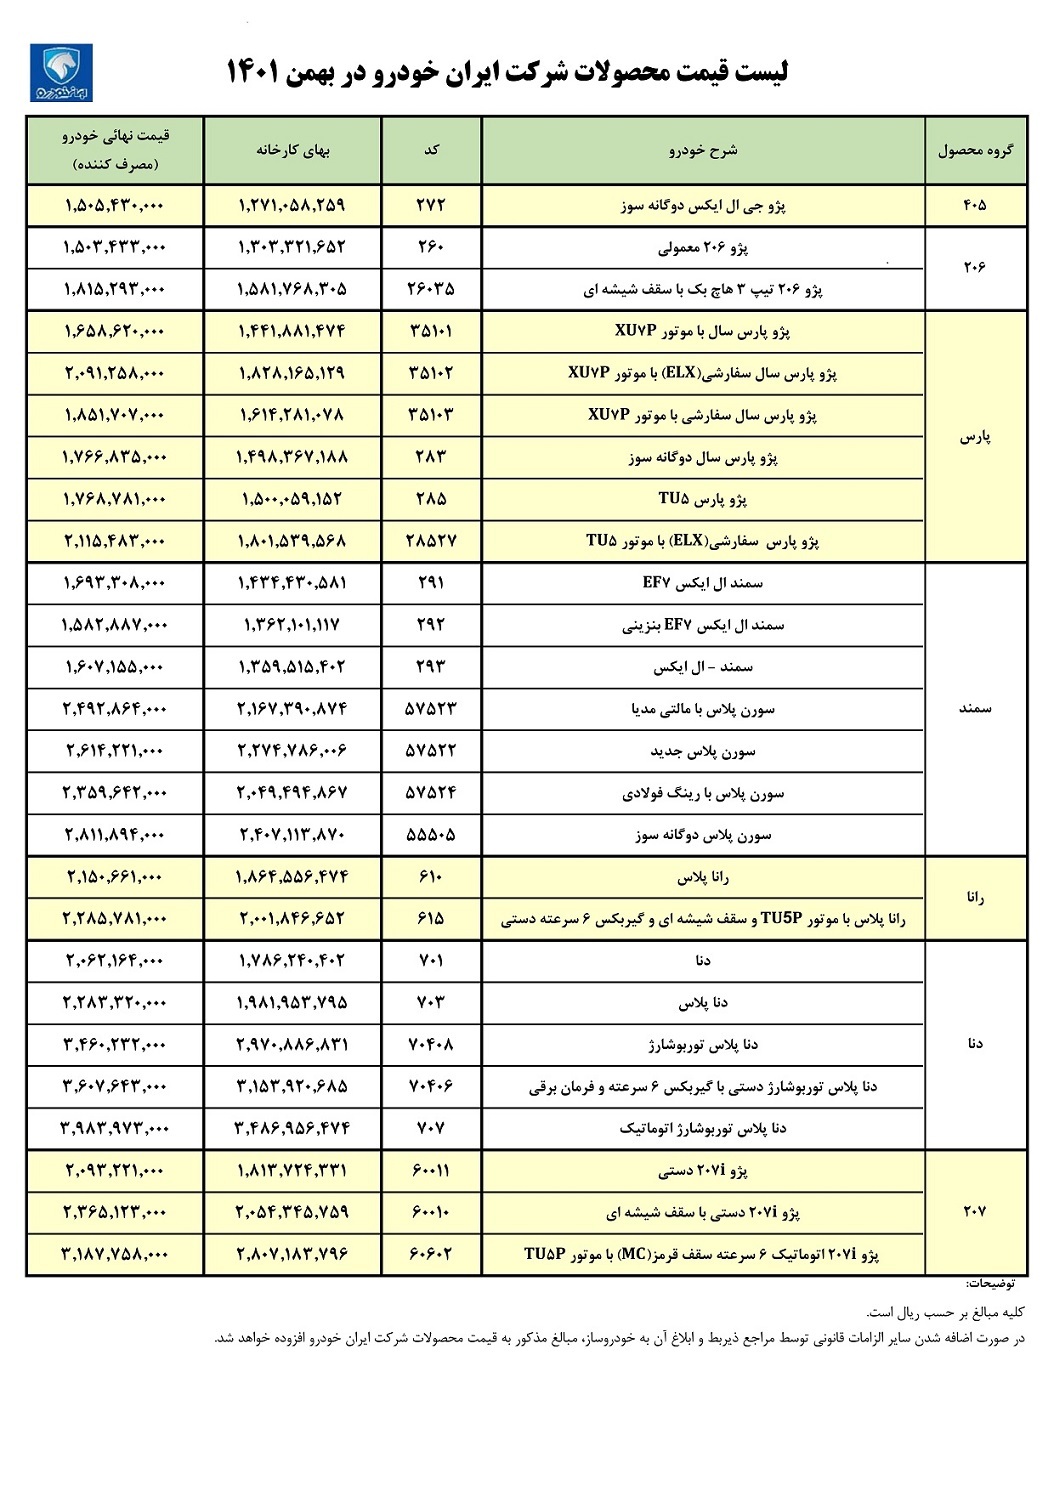 انتشار رسمی لیست قیمت کارخانه کلیه محصولات ایران خودرو در بهمن ماه 90 (+جدول کامل)